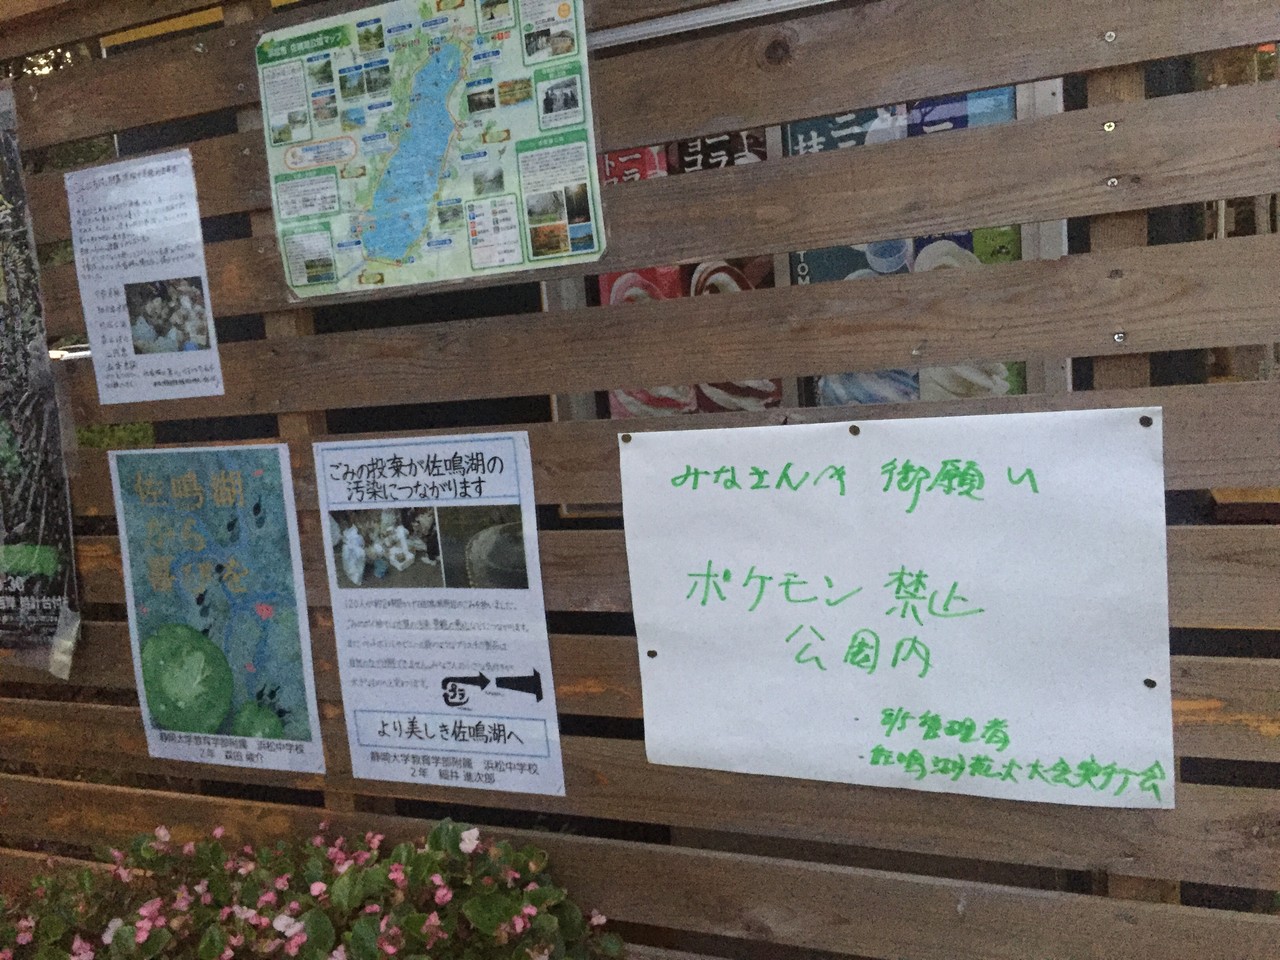 悲報 佐鳴湖公園でポケモンgoが禁止に 浜松市がポケストップの削除要請を提出 浜松つーしん